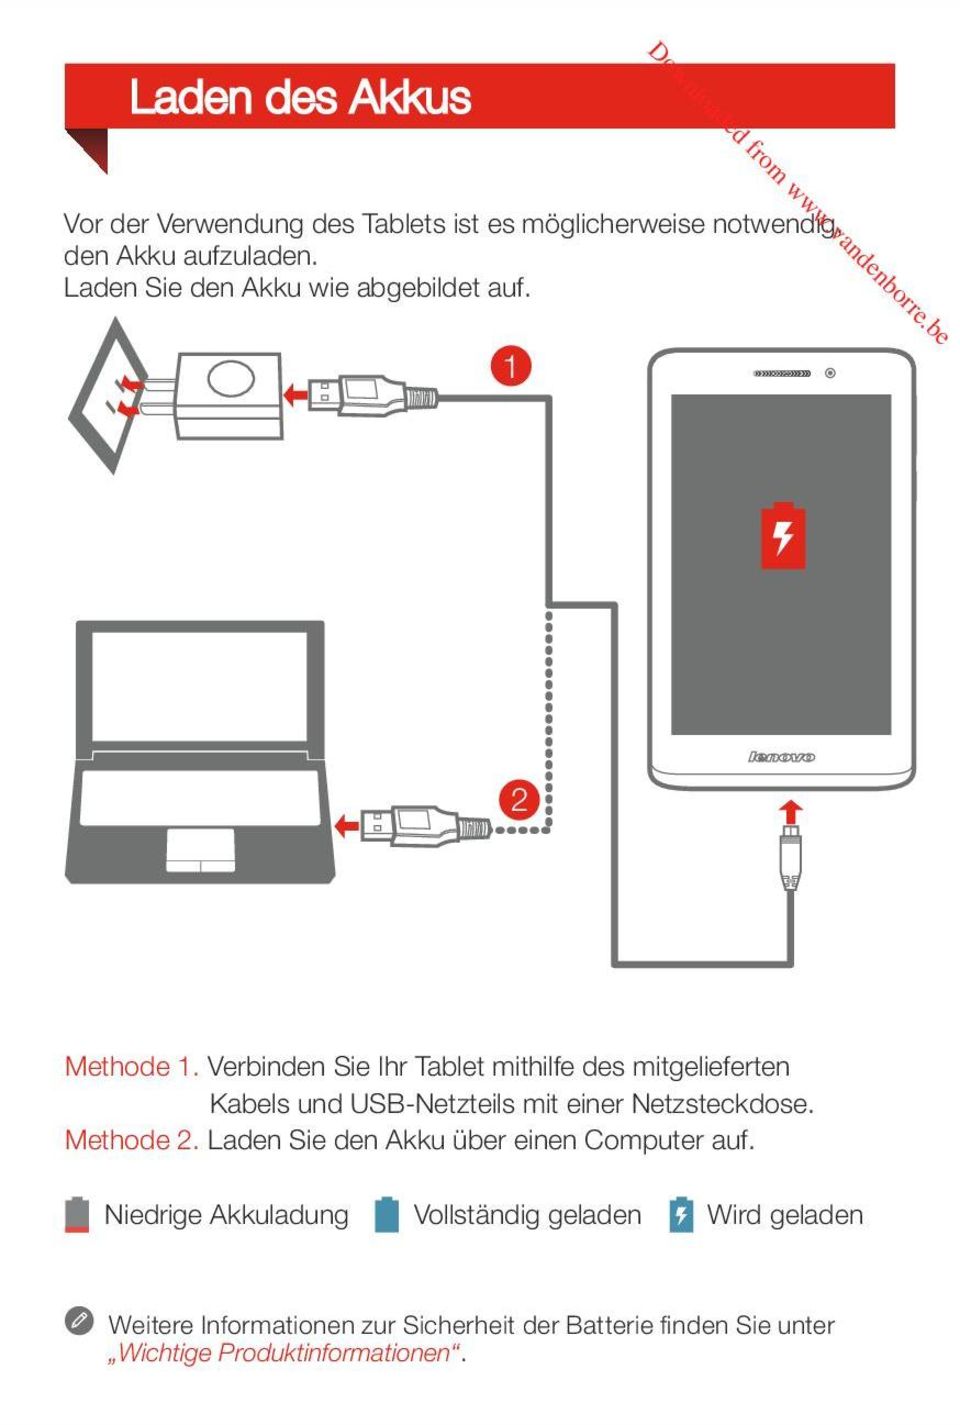 Verbinn Sie Ihr Tablet mithilfe s mitgelieferten Kabels und USB-Netzteils mit einer Netzsteckdose. Metho 2.